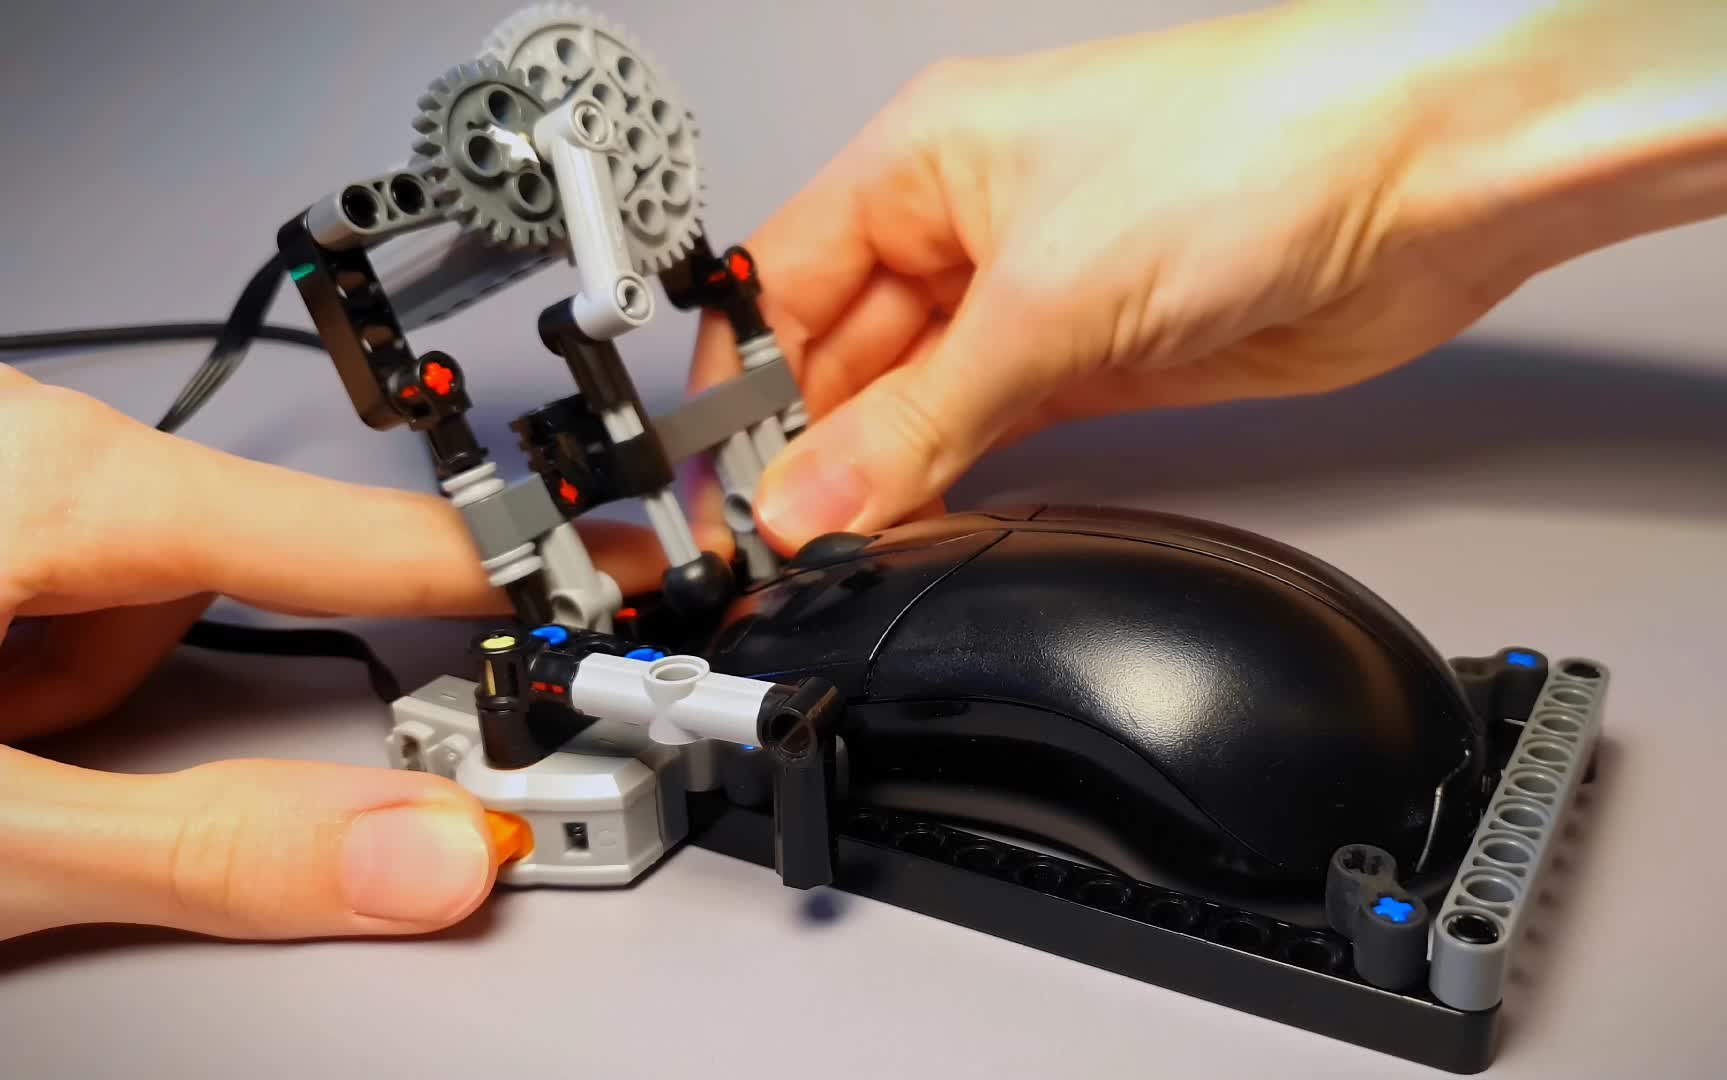 El artilugio de Lego rompe récords de velocidad de clic del mouse a más de 70 clics por segundo